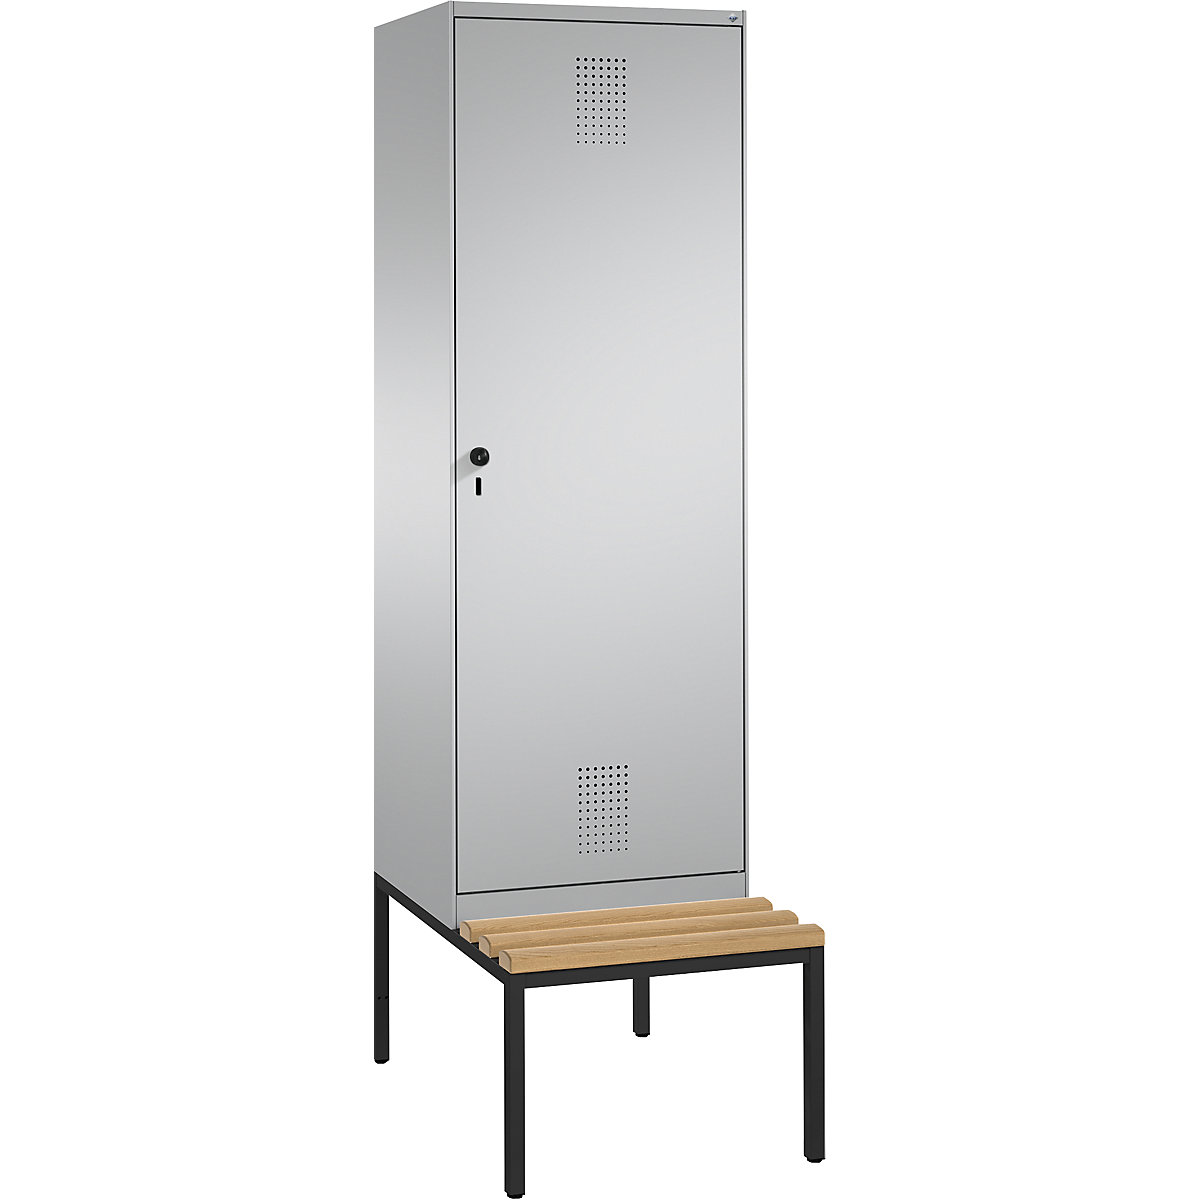 Šatní skříň s lavicí EVOLO s dveřmi přes 2 oddíly – C+P, 2 oddíly, 1 dveře, šířka oddílu 300 mm, bílý hliník / bílý hliník-3